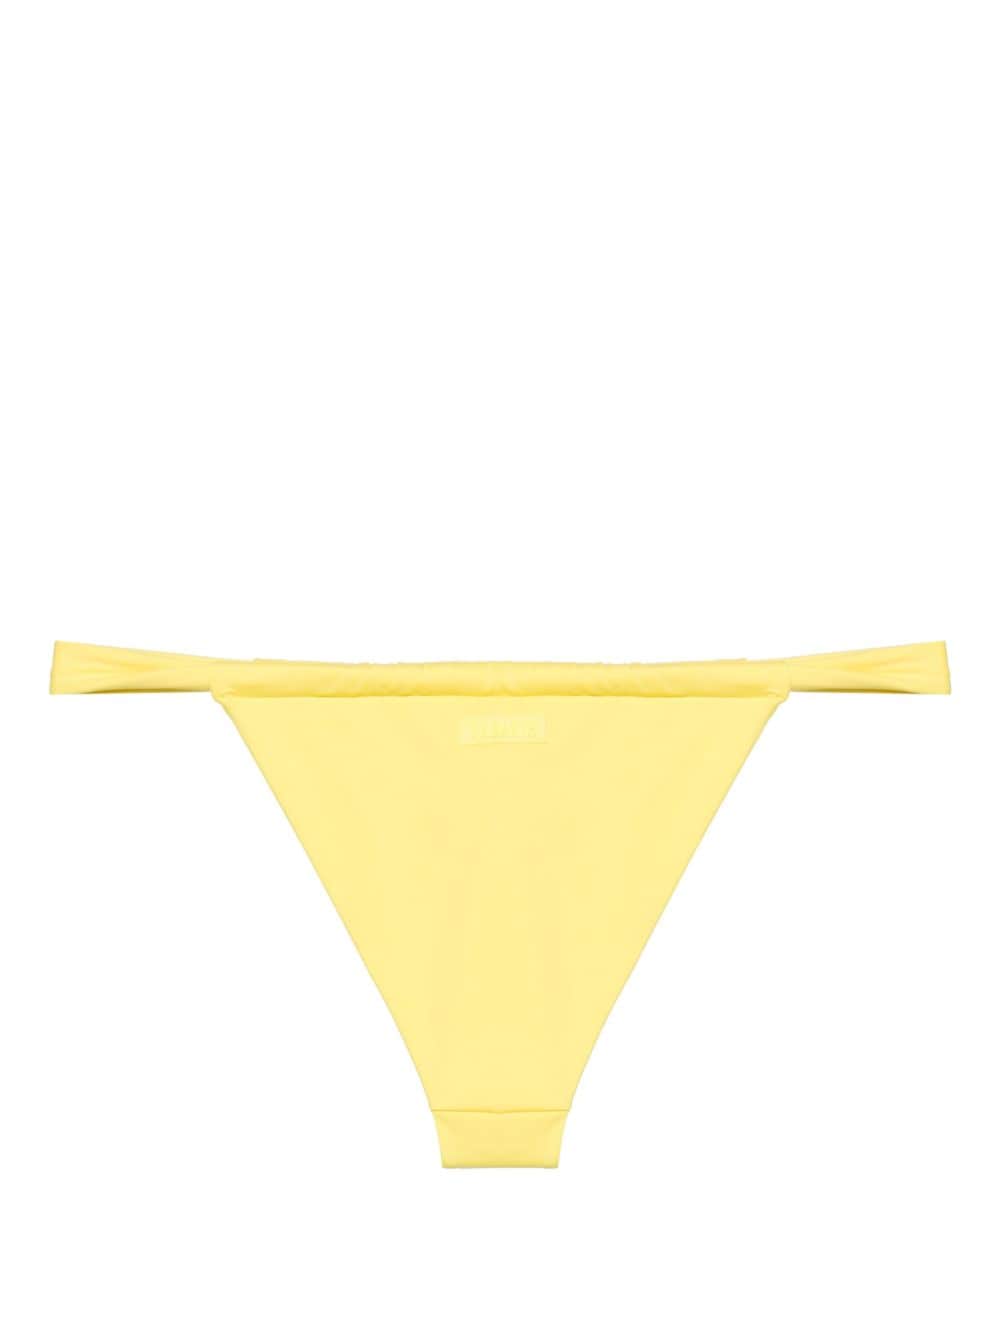 Bas de maillot de bain femme jaune